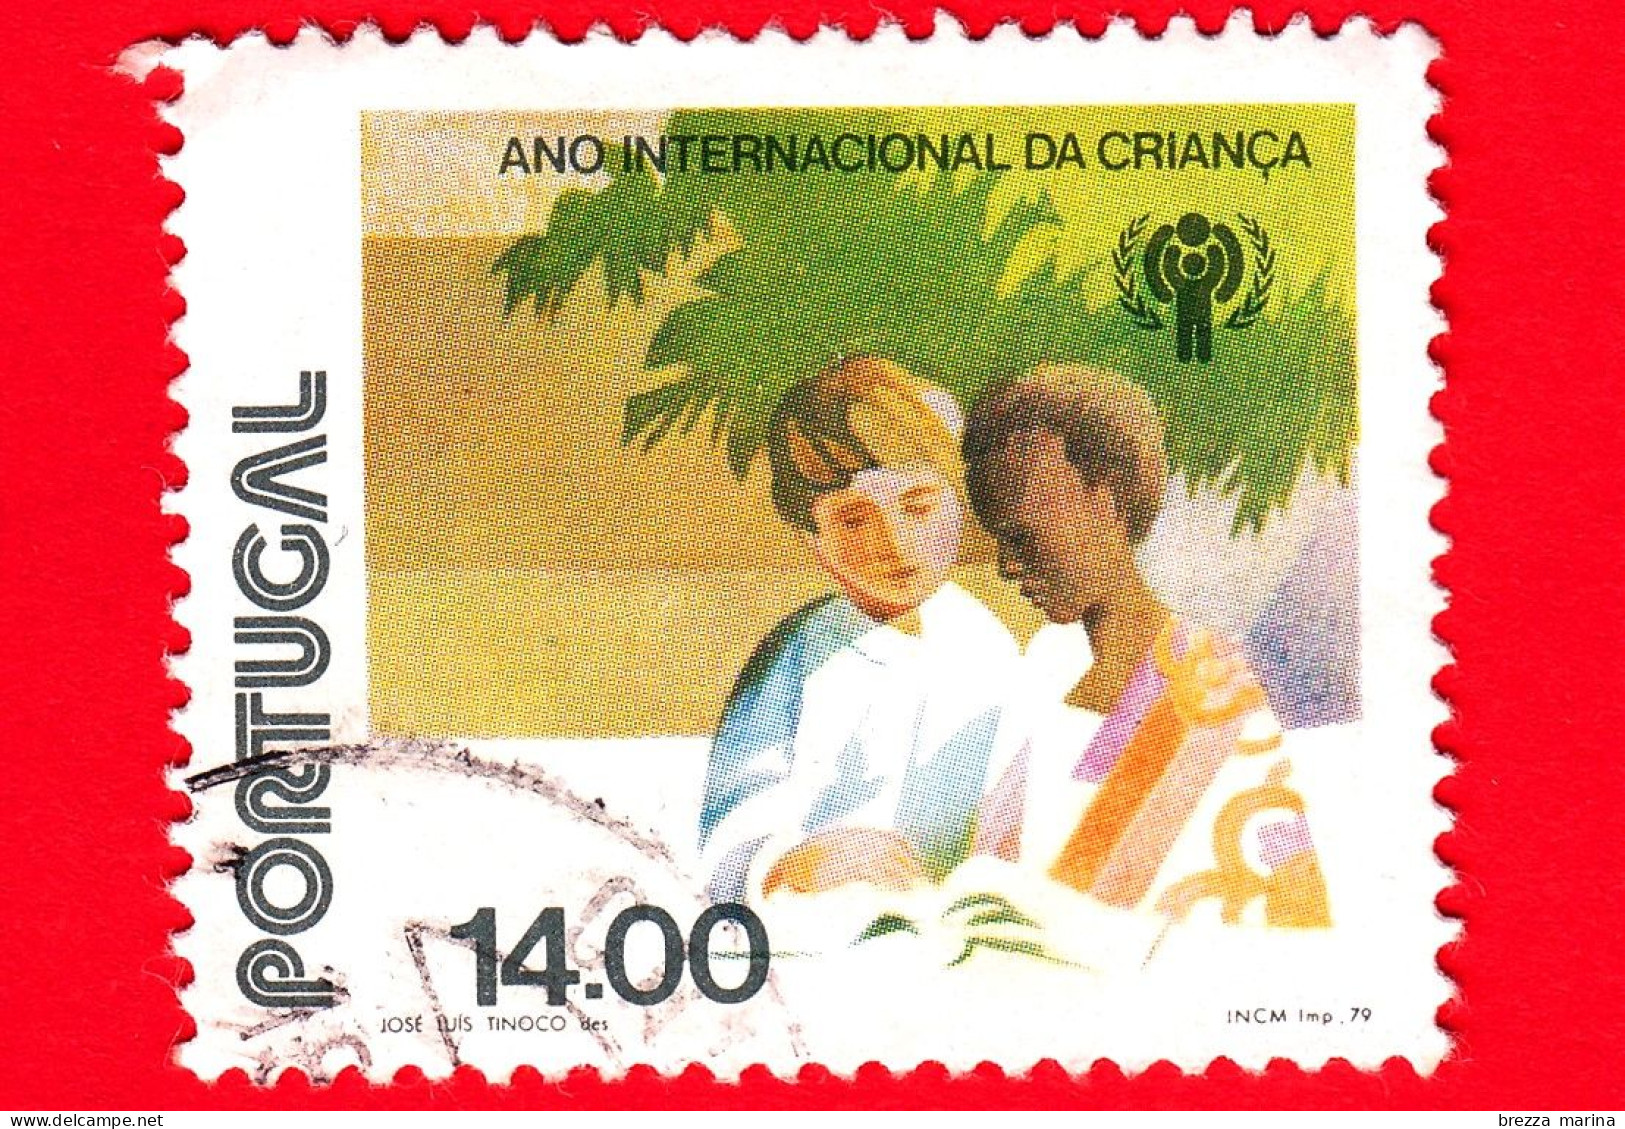 PORTOGALLO - Usato - 1979 - Anno Internazionale Dei Bambini - Ragazzo Bianco E Ragazzo Nero - 14.00 - Used Stamps